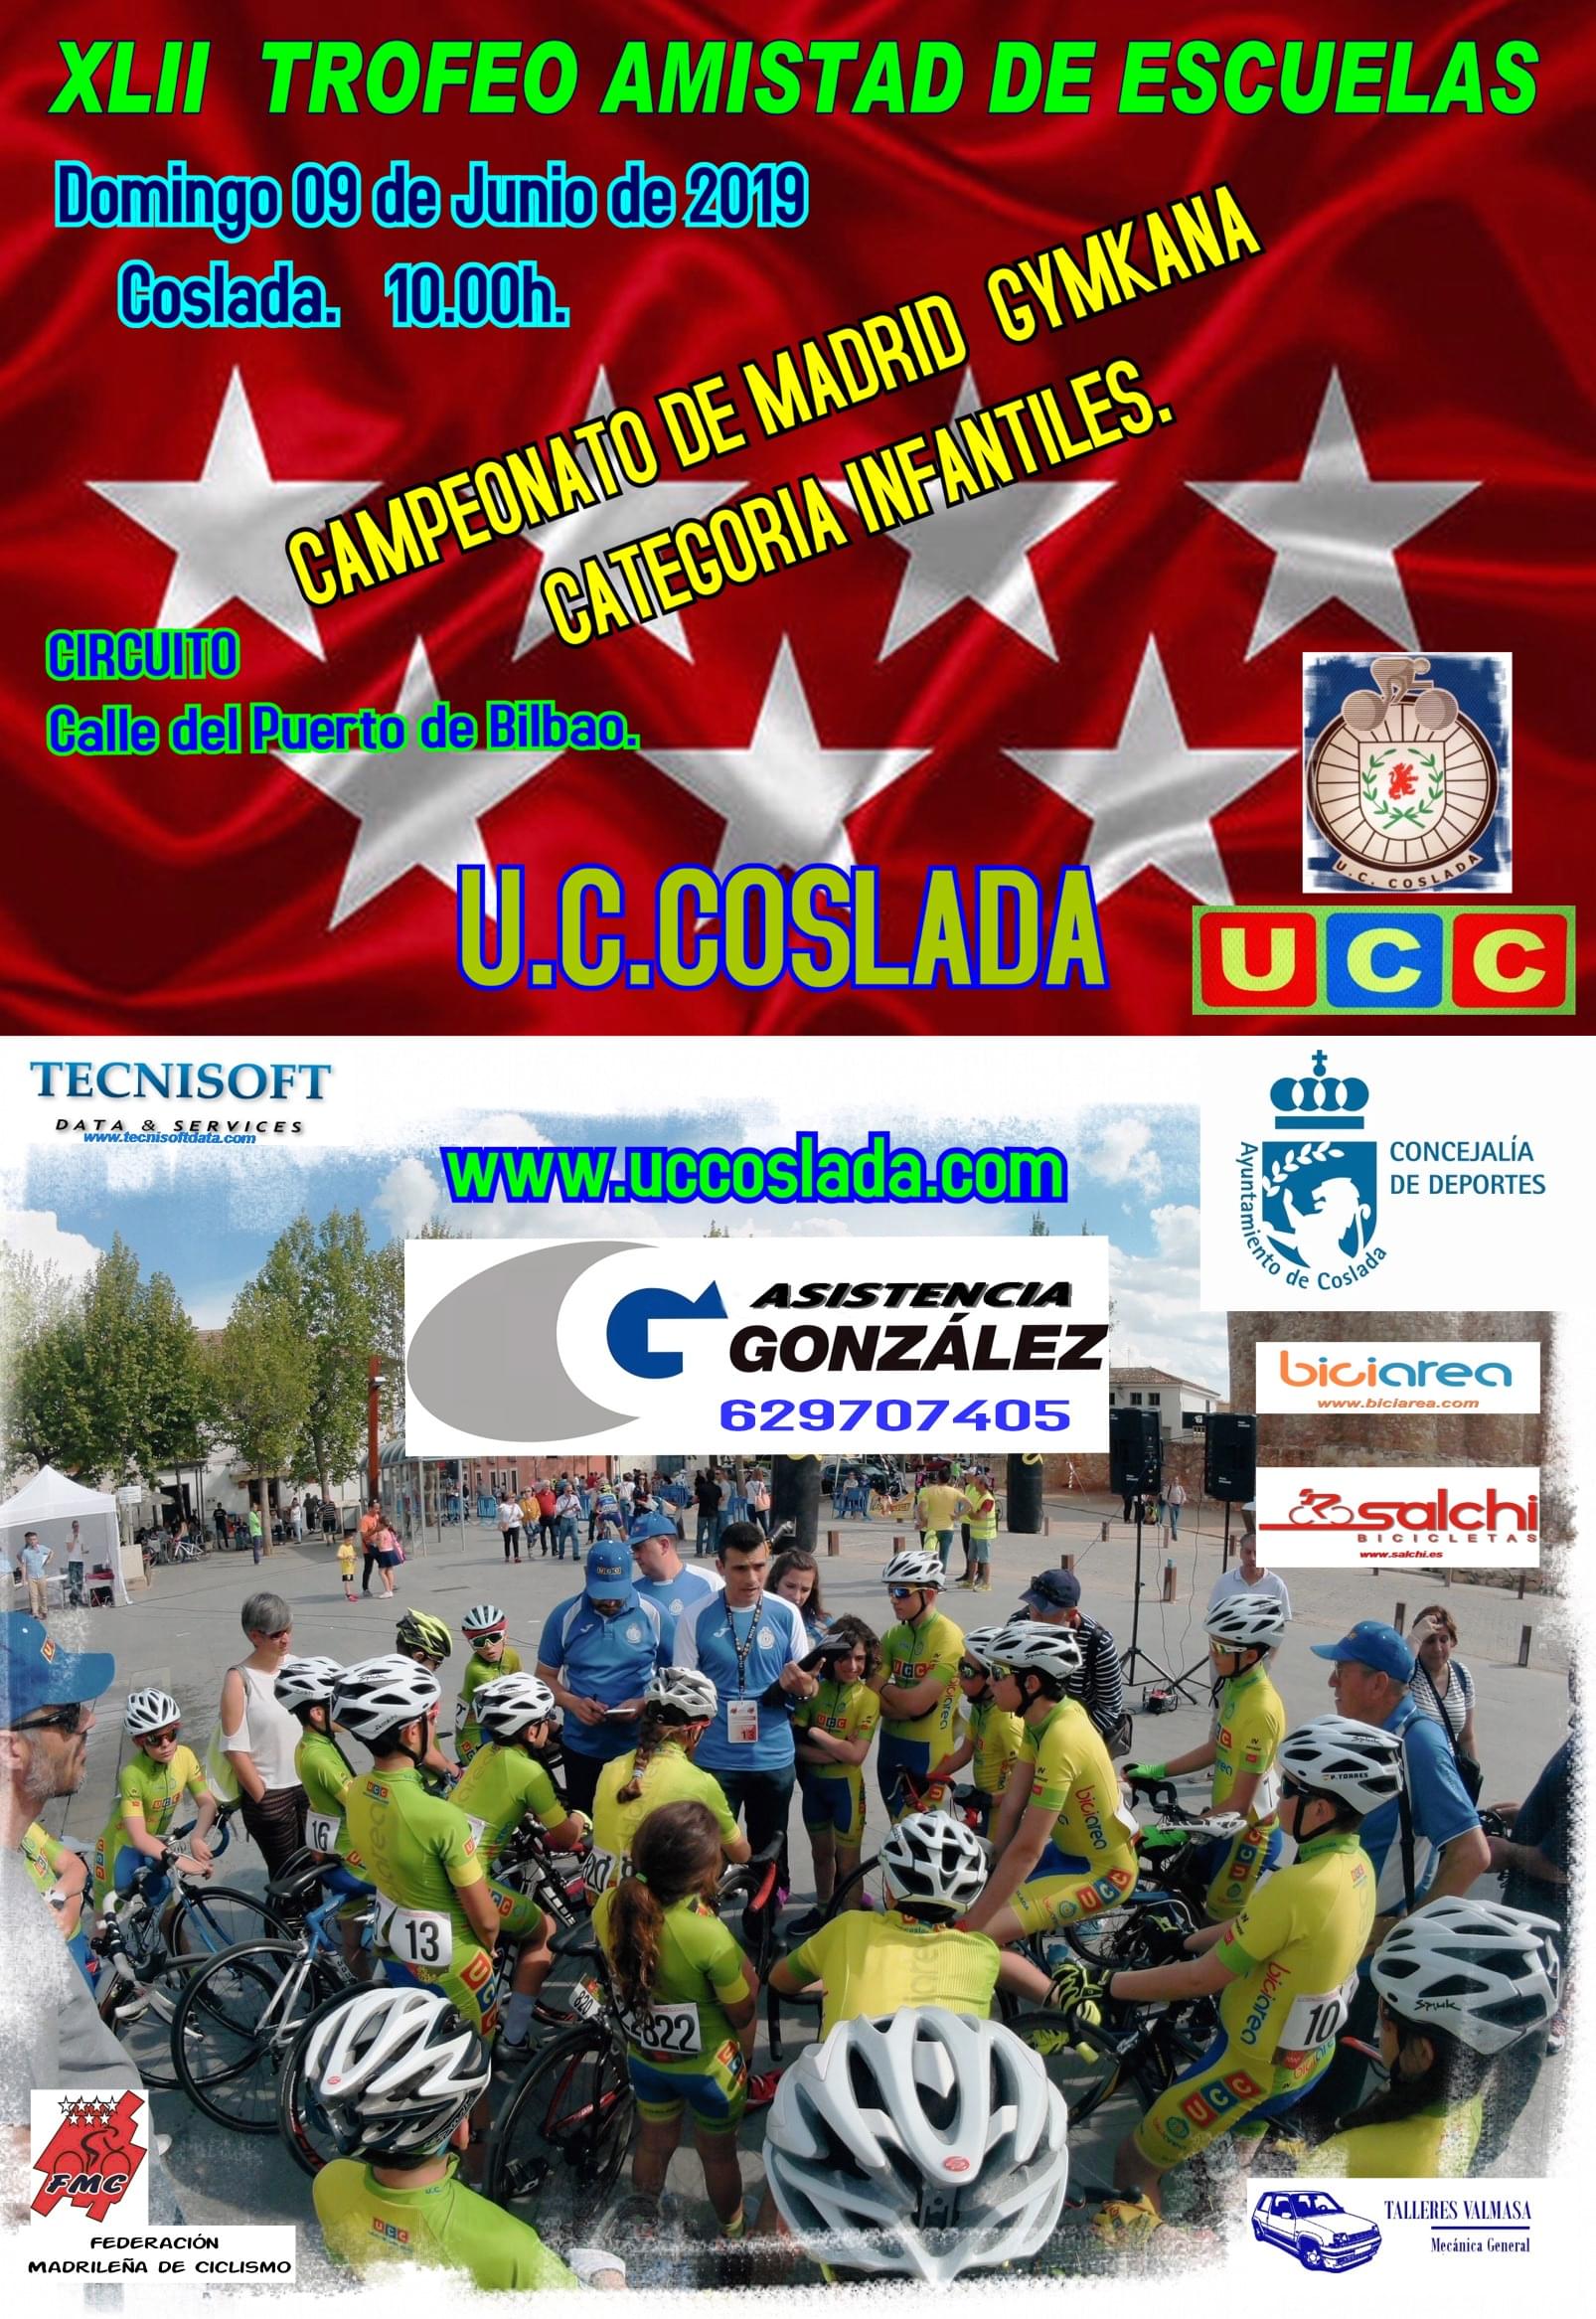 Todo un clásico del Ciclismo Base madrileño, el XLII Trofeo Amistad, a escena el 9 de Junio